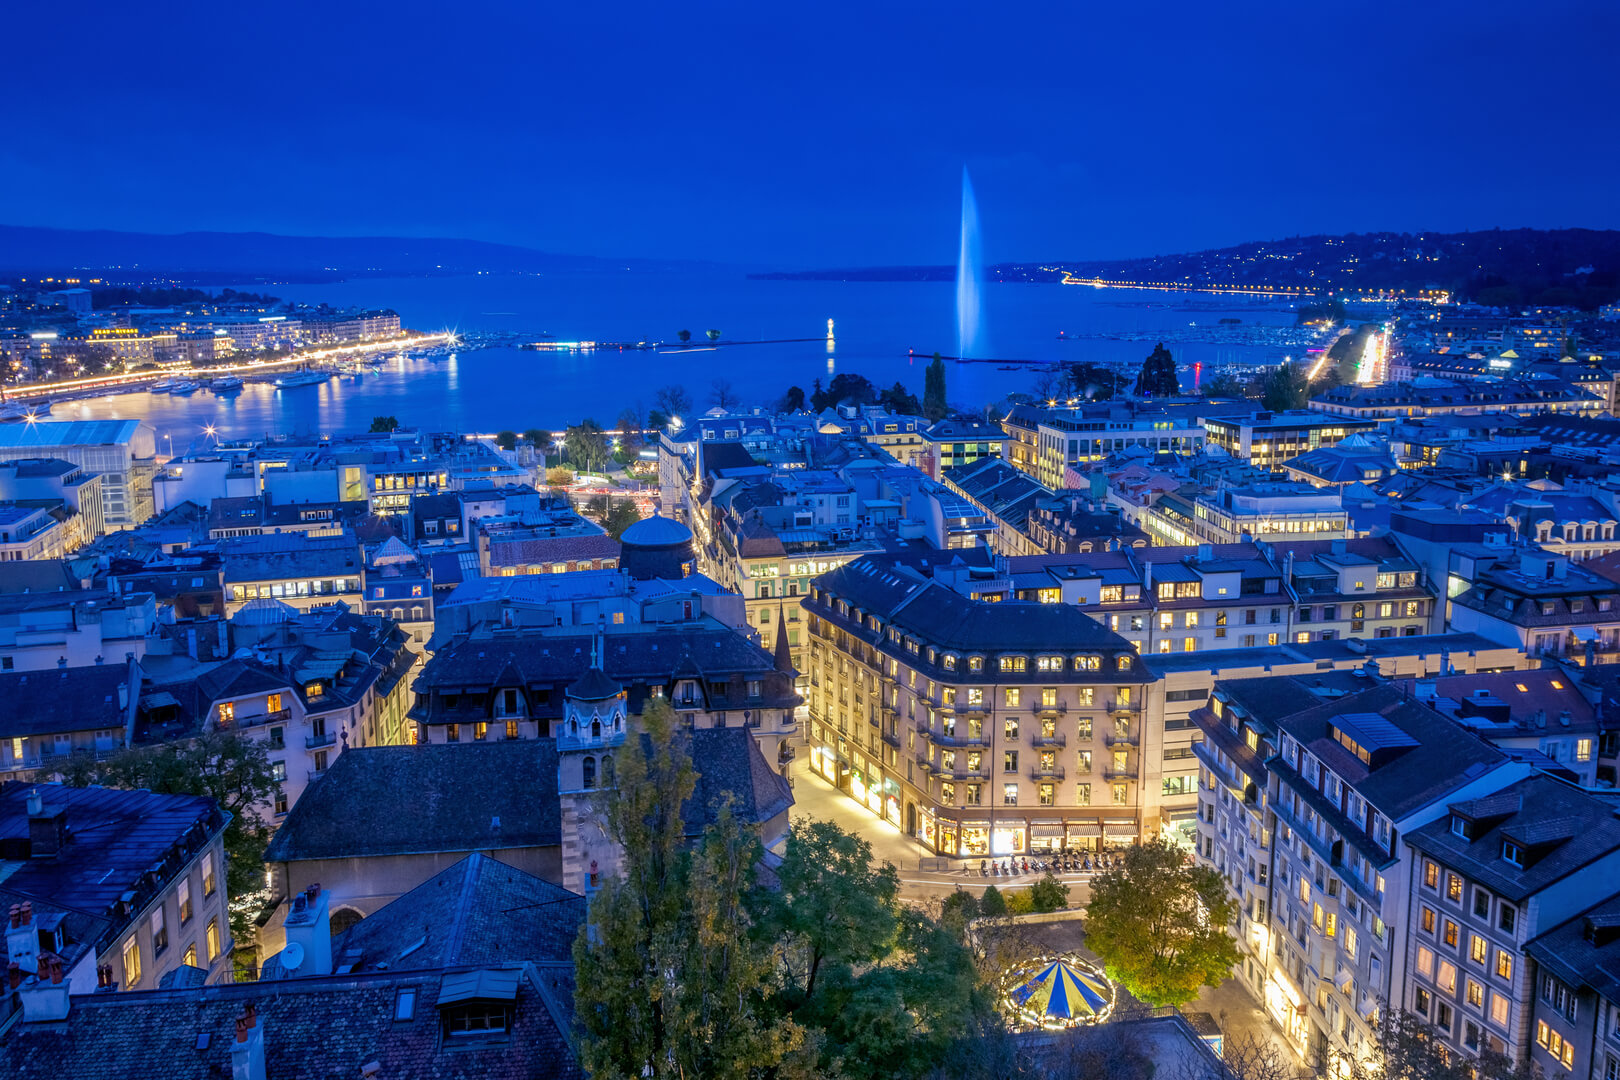 Vue aérienne du centre ville de Genève et du Jet d'eau de nuit lors de la Journée mondiale du diabète. Cette photo a été prise peu après le coucher du soleil, à l'heure bleue, depuis le sommet de la tour de la cathédrale Saint-Pierre.